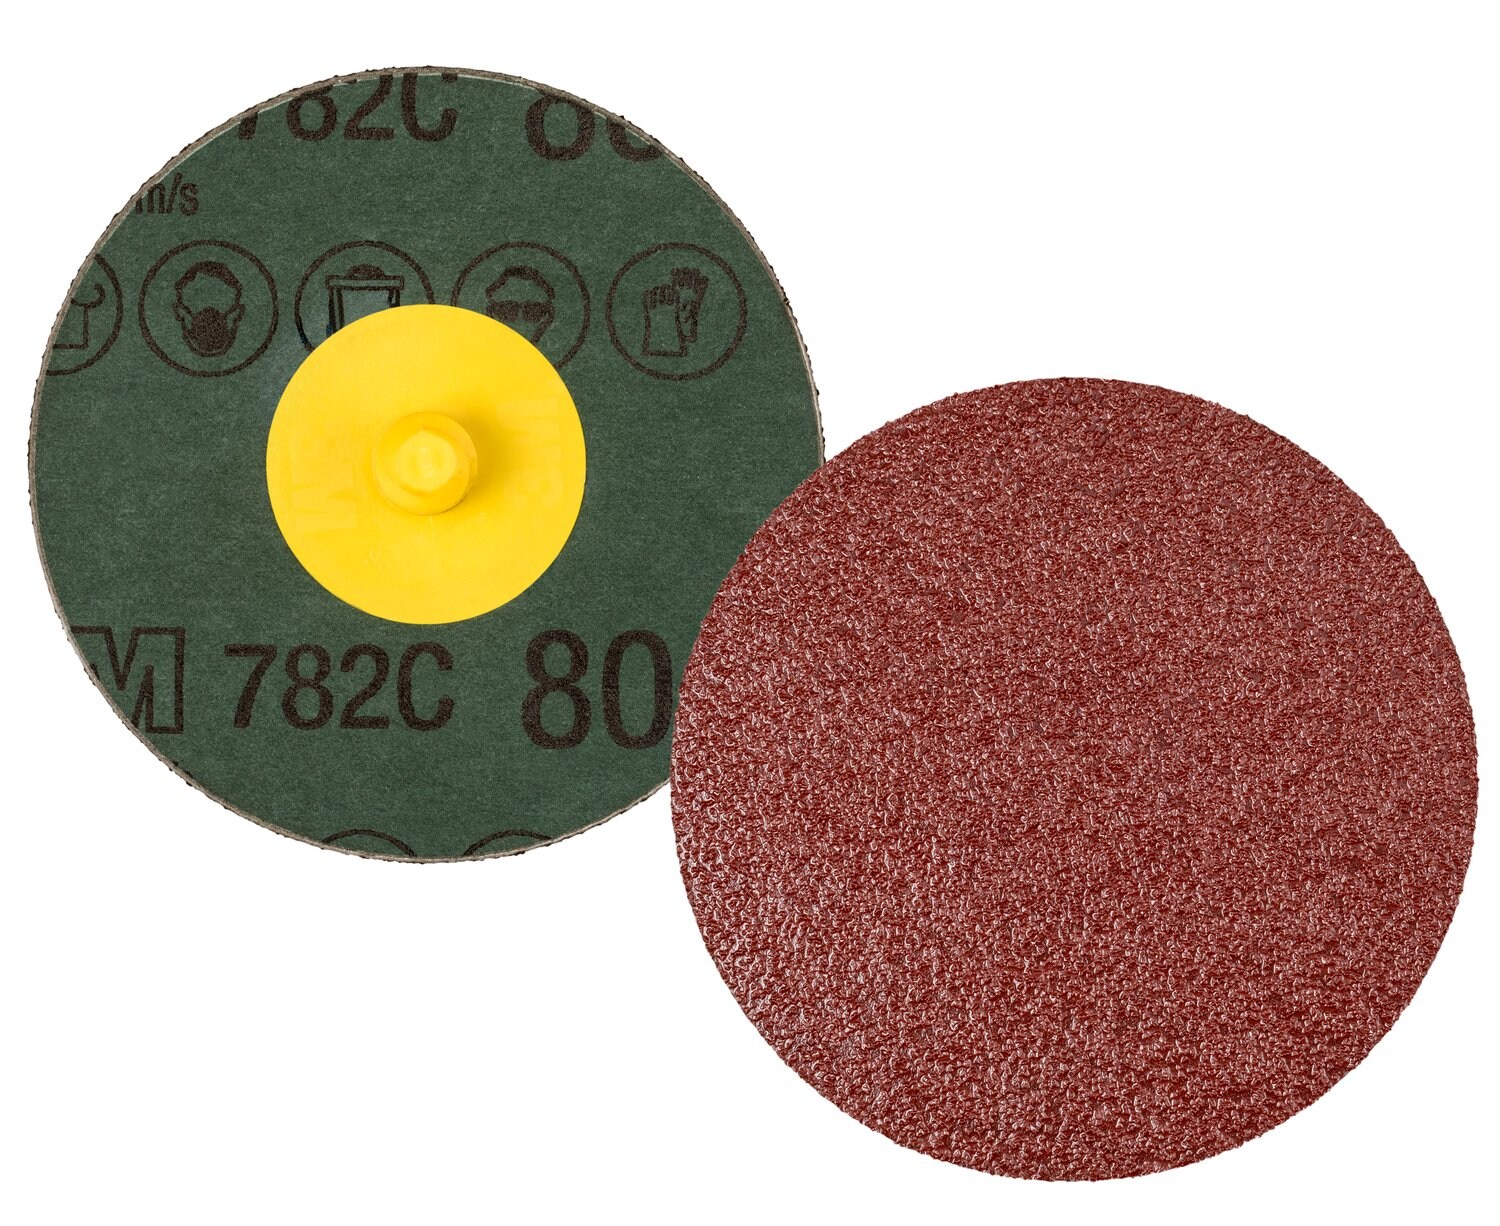 7100100991 - 3M Roloc Fibre Disc 782C, 80+, TR, 4 in, Die R400BB, 25/Carton, 100
ea/Case